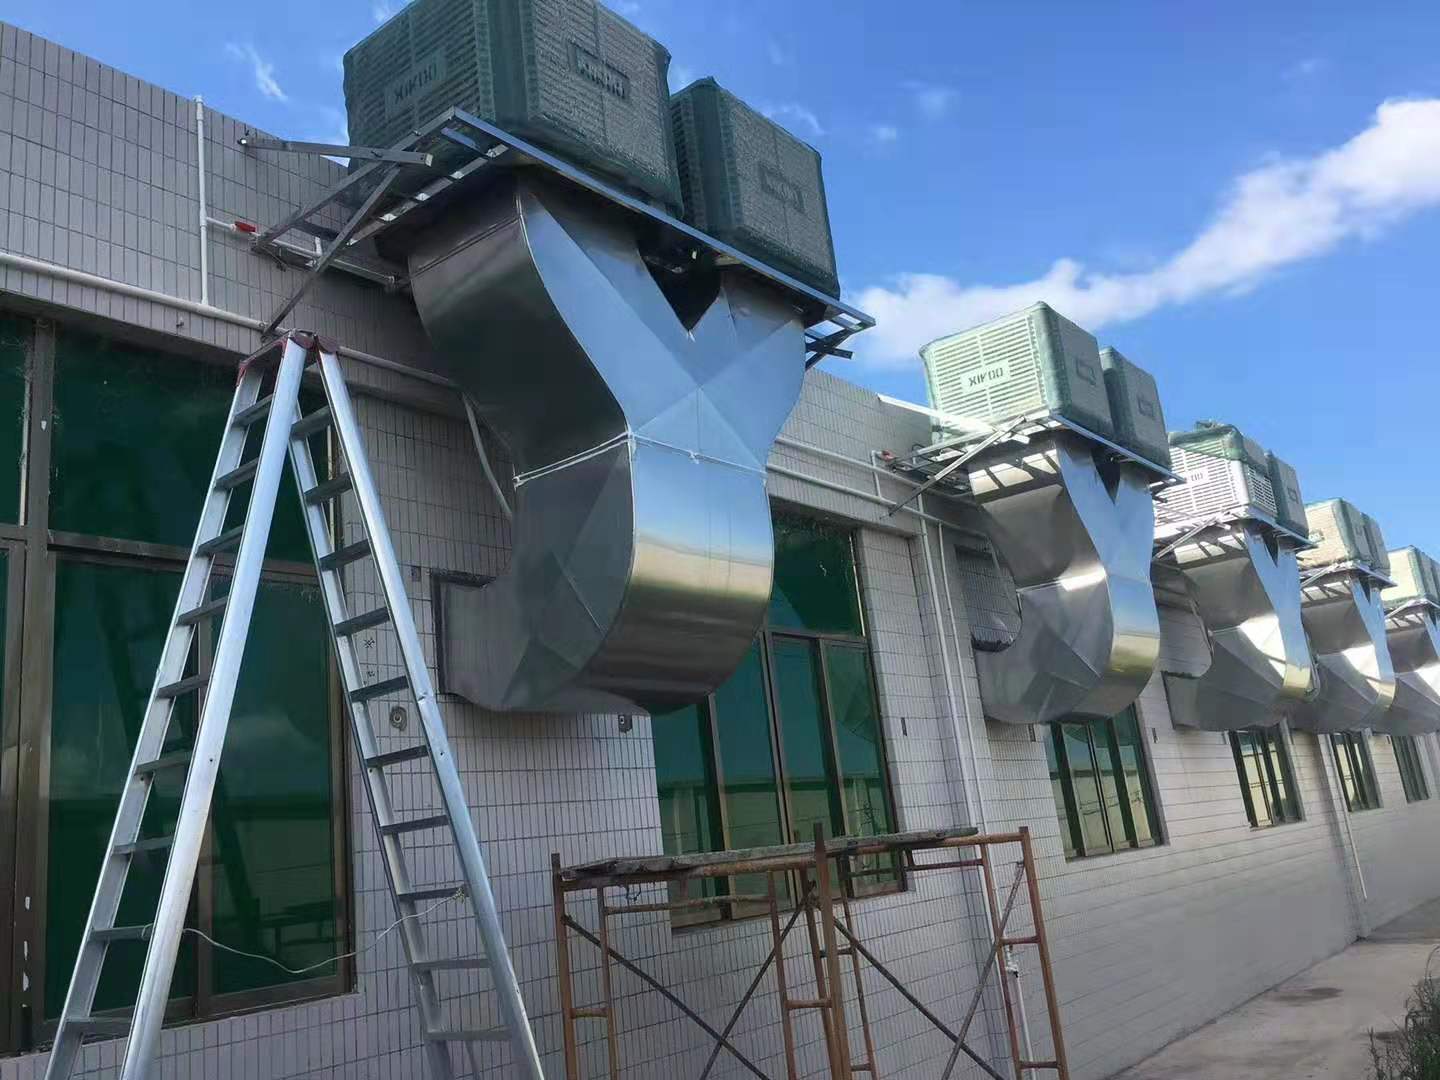 Der XIKOO-Luftkühler sorgt für Kühlung und Belüftung in der Werkstatt